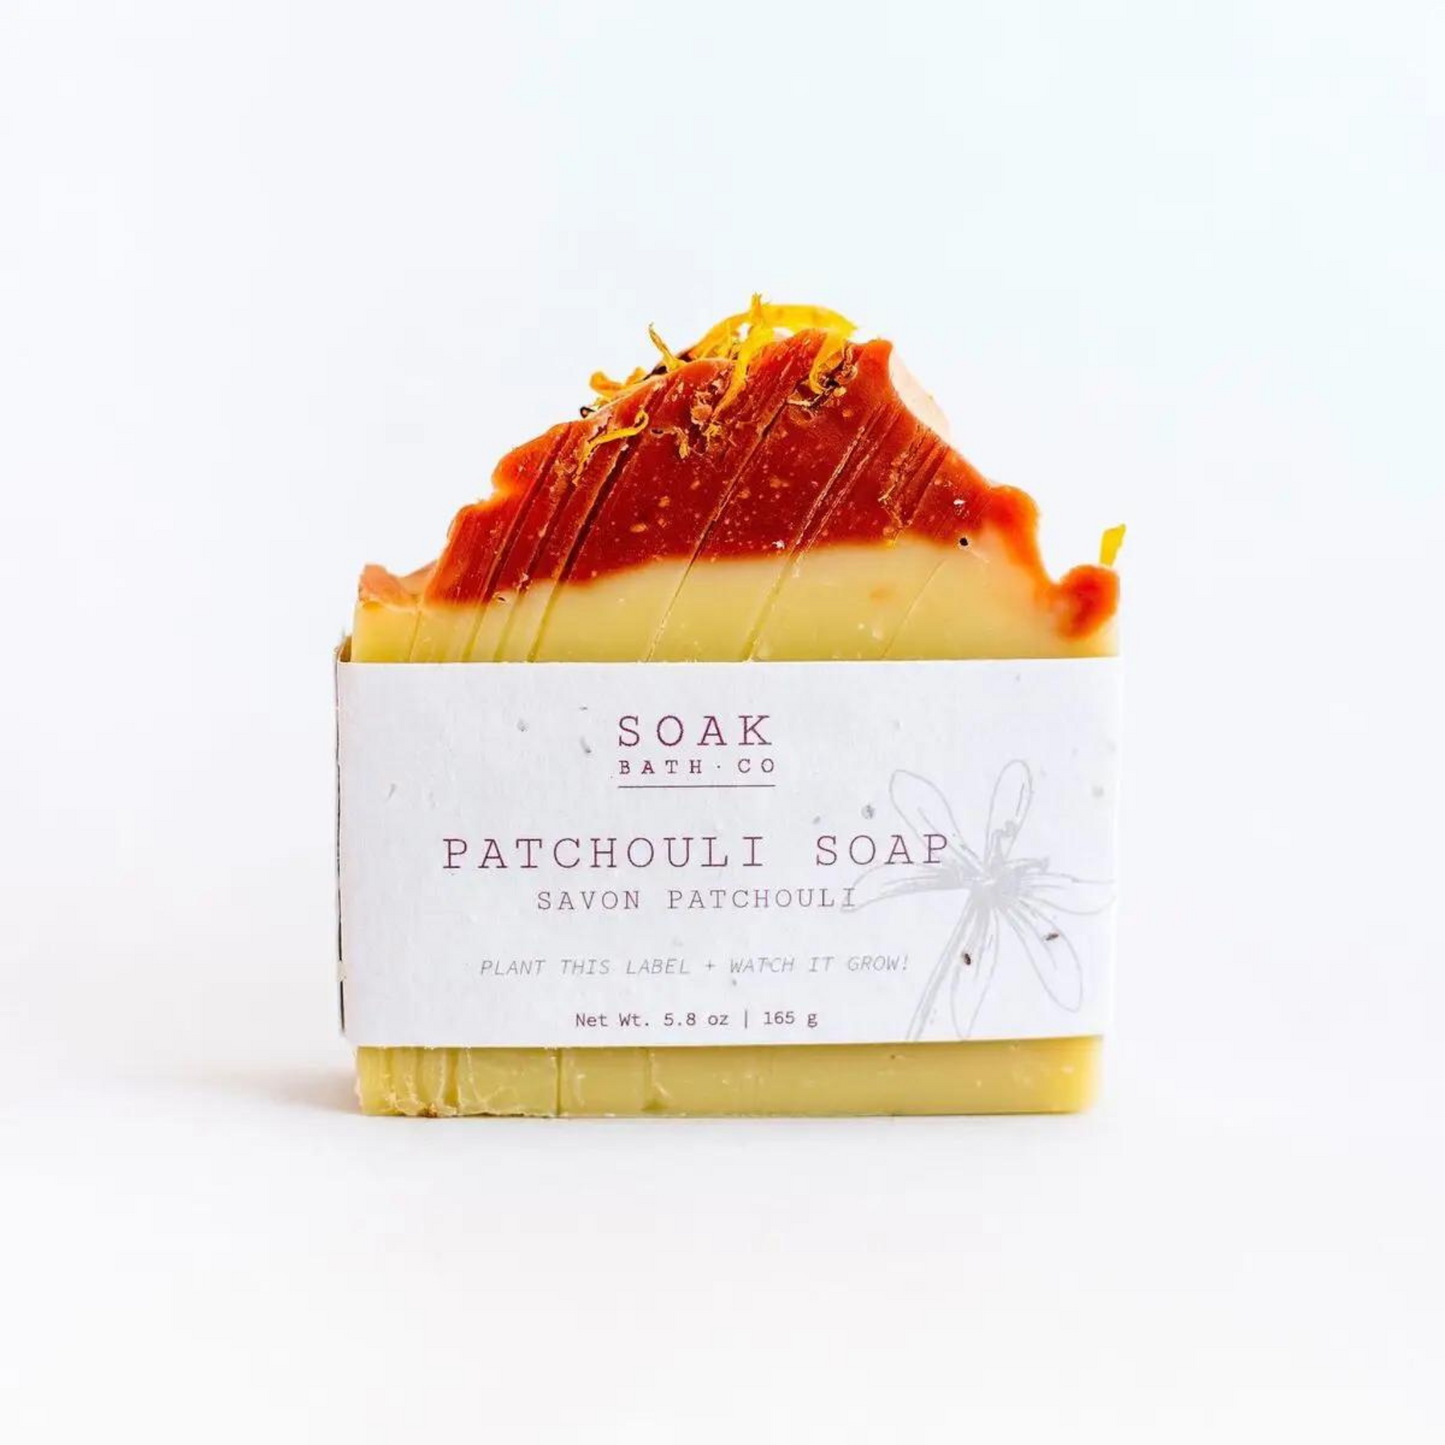 Patchouli Soap Bar - Plantable Label